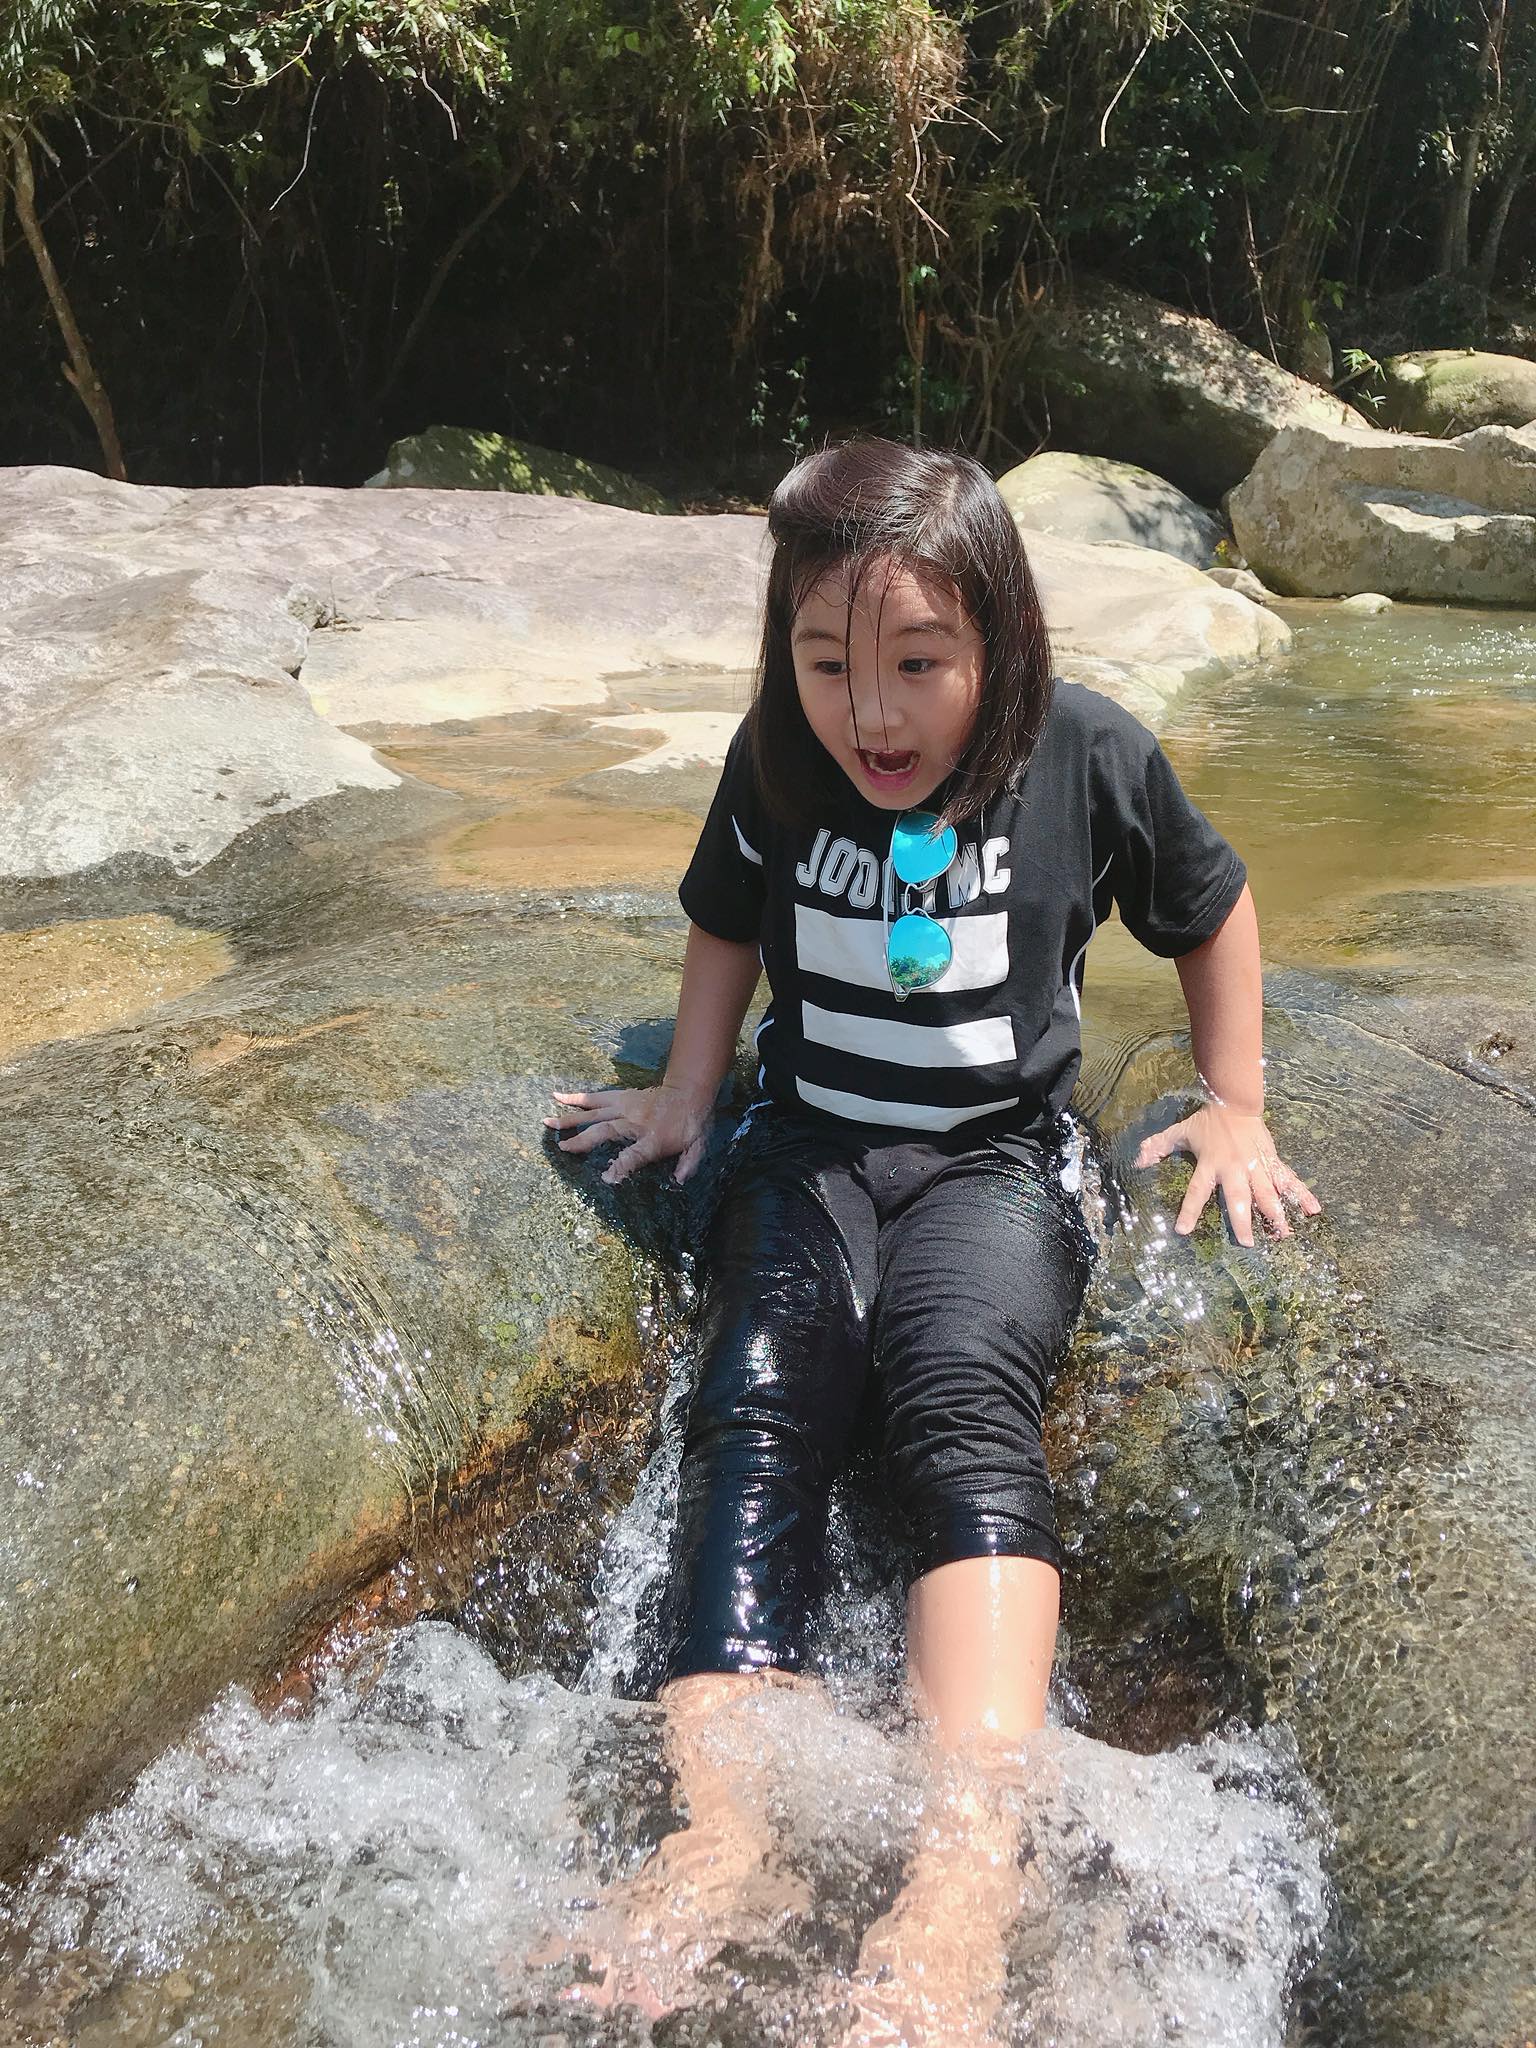 Bạn nhỏ này khá sợ hãi khi vừa đặt chân tới suối, nhưng đó chỉ là cảm xúc ban đầu thôi nhé !